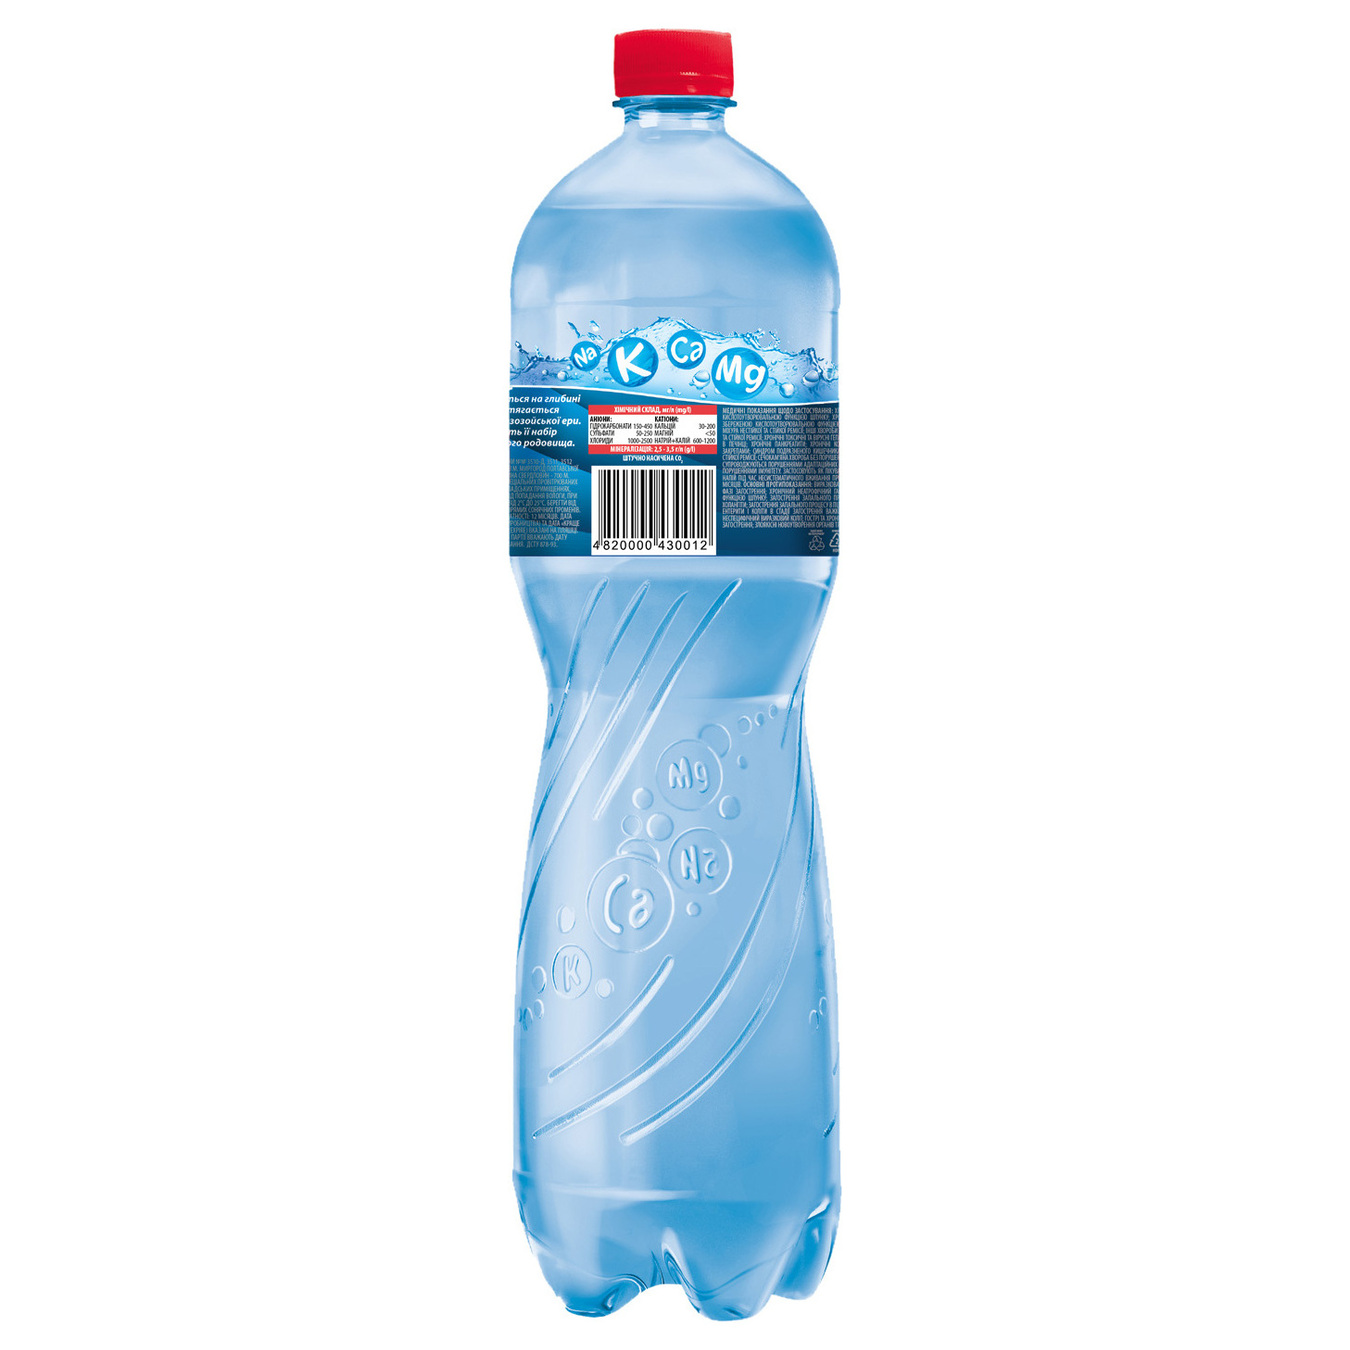 Sparkling water Mirgorodska 1,5l 3